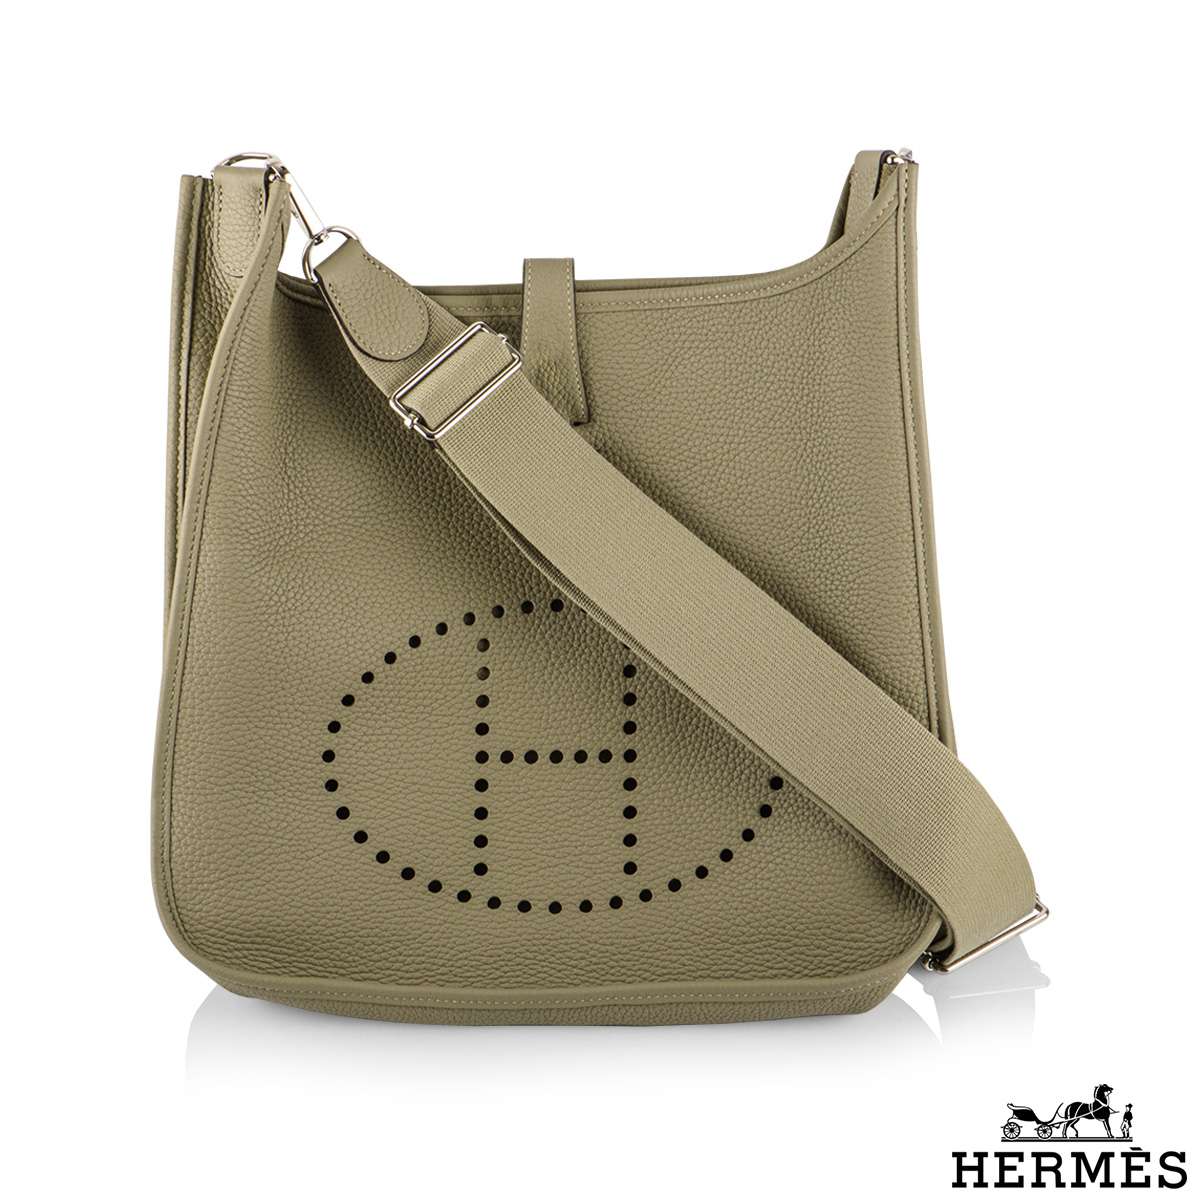 The Hermes Evelyne Bag